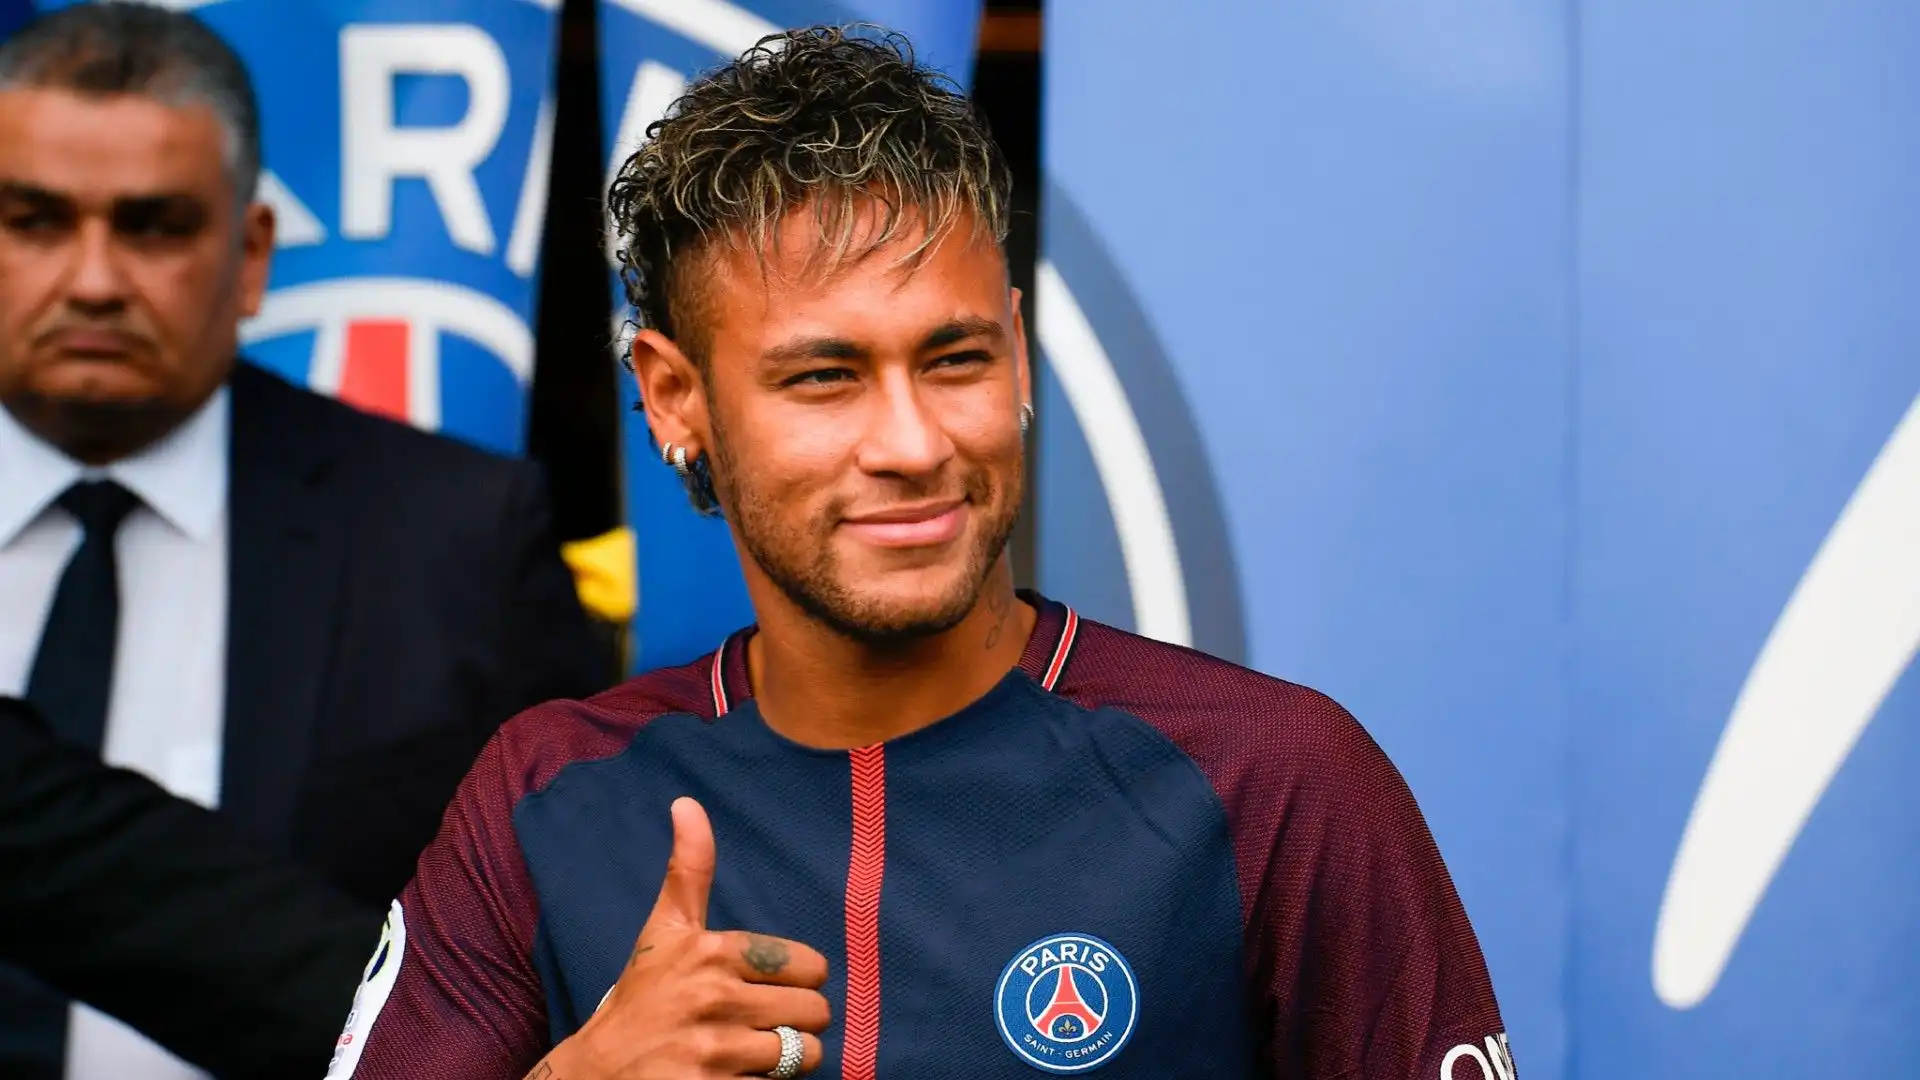 1- Finora il calciatore più pagato nella storia del PSG è Neymar: 222 milioni di euro